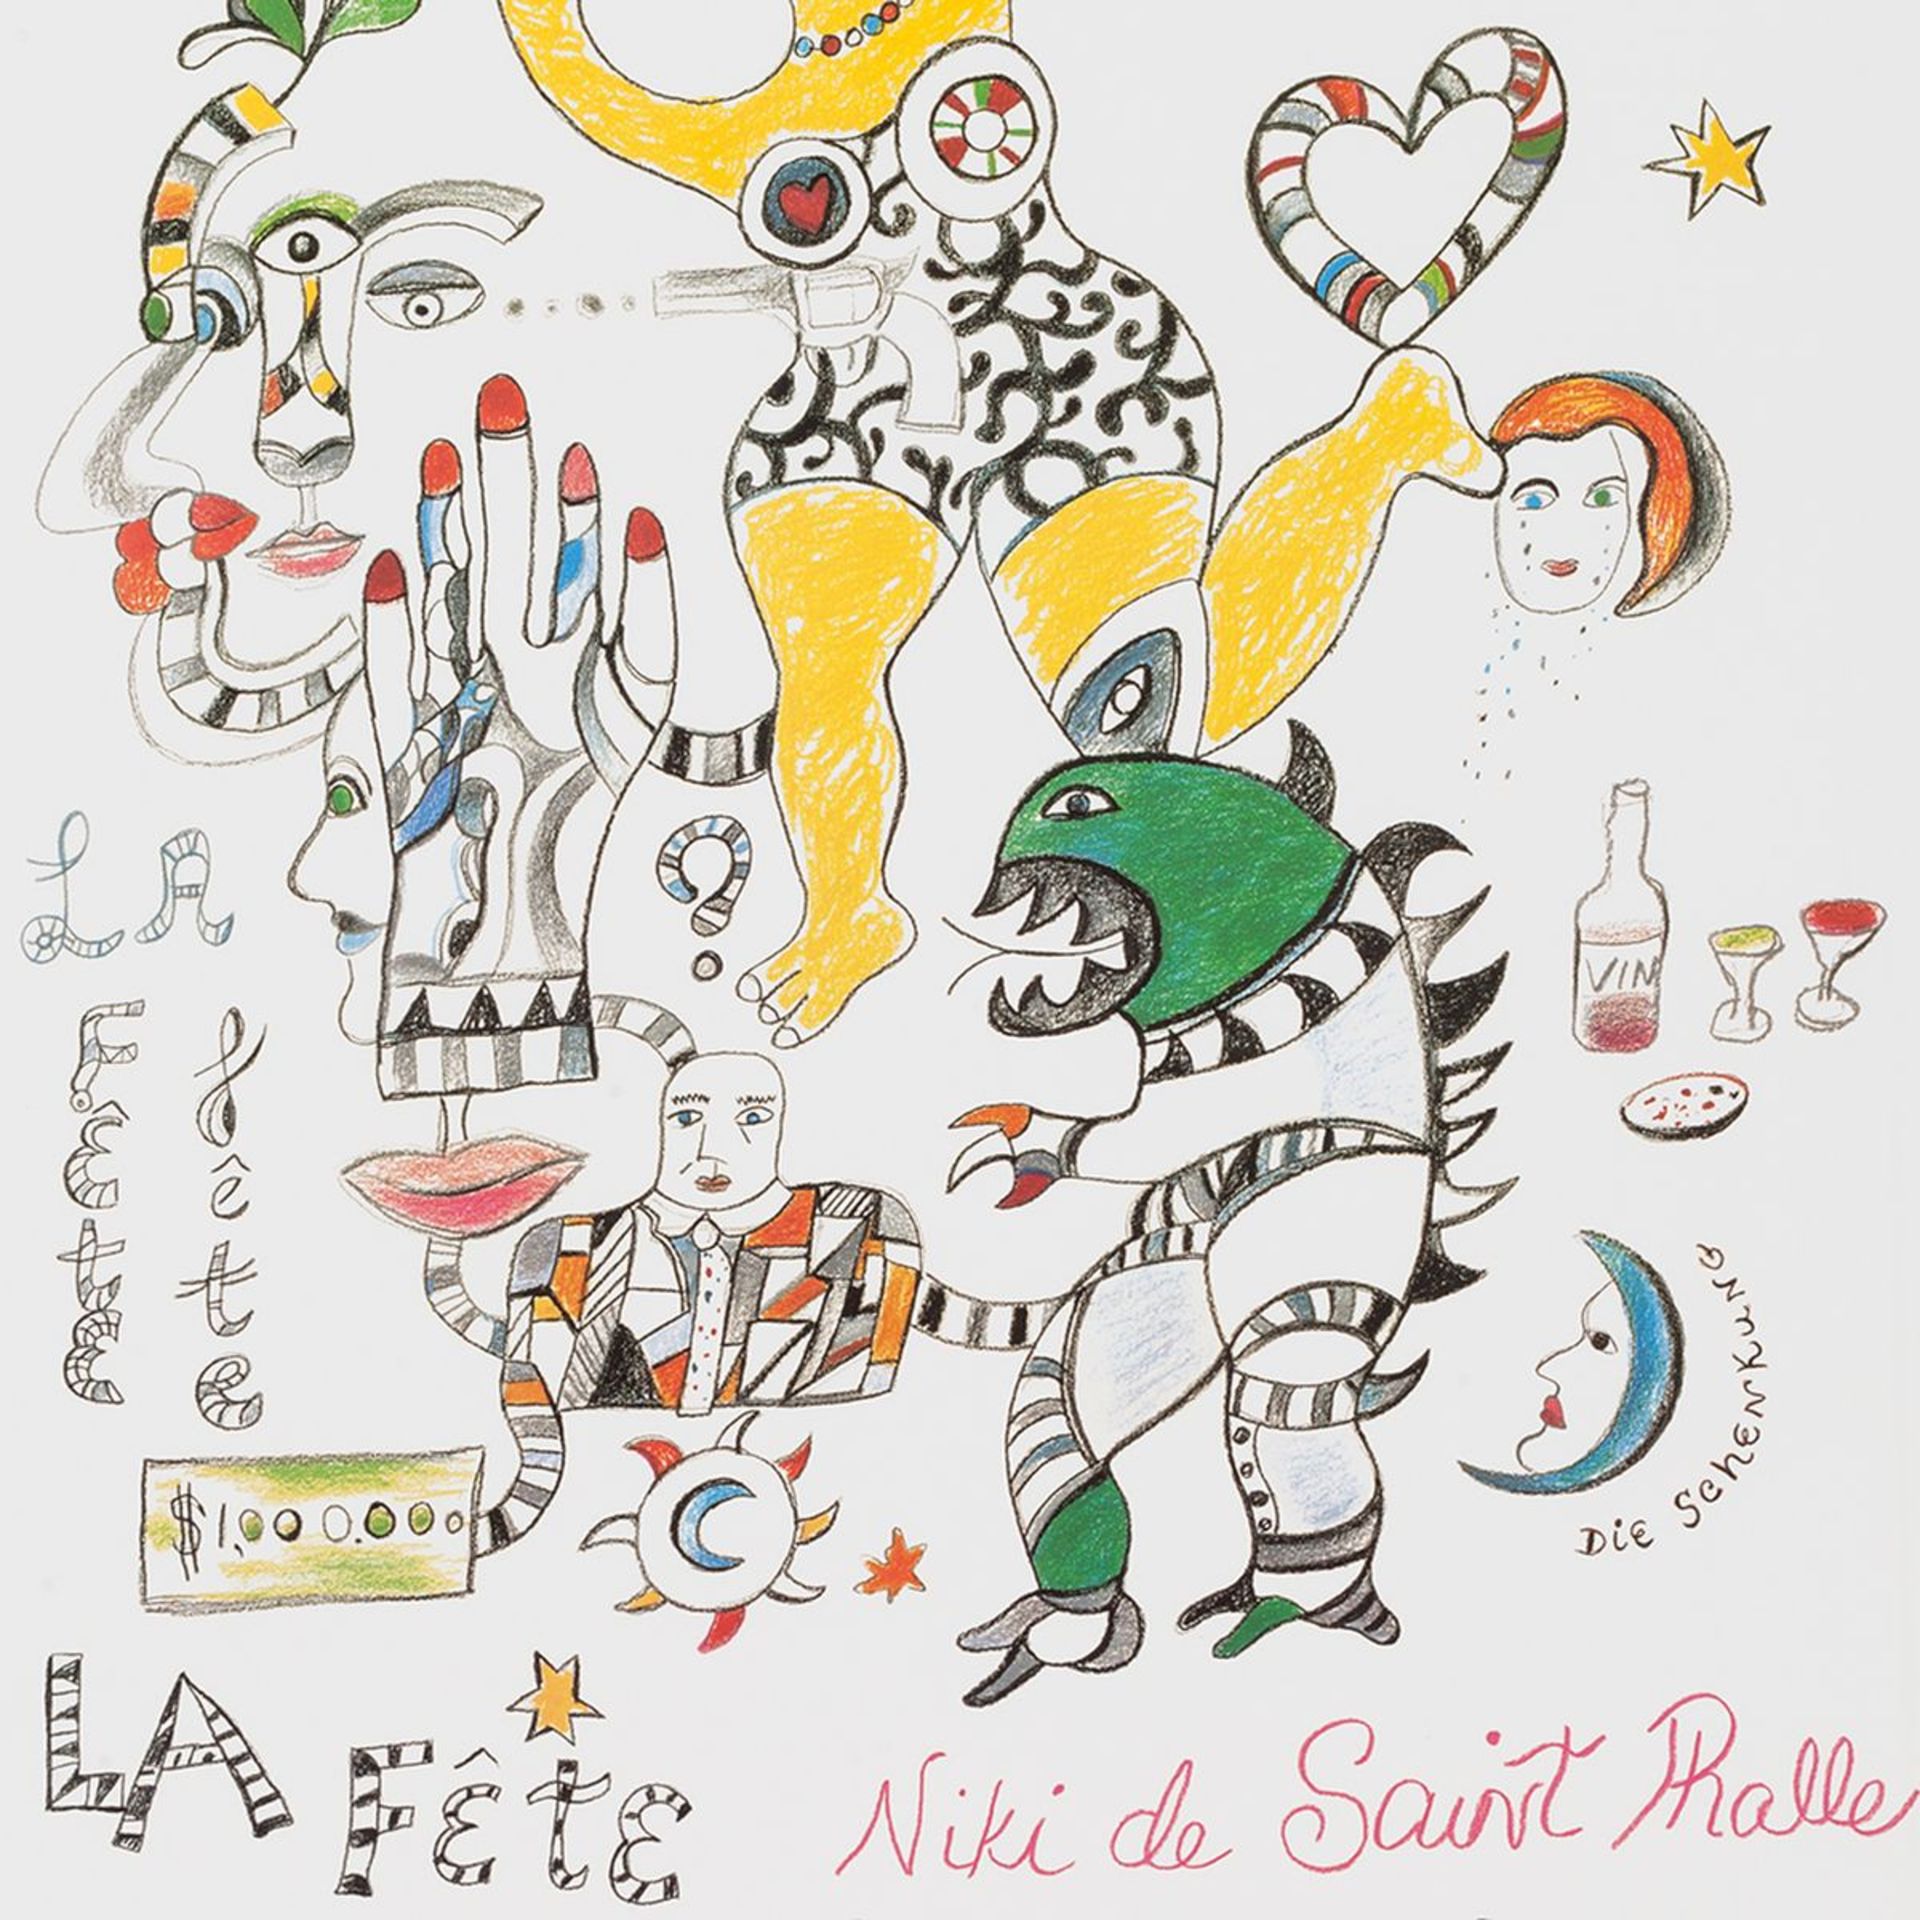 Niki de Saint Phalle, poster "La Fete. The donation " - Image 8 of 9